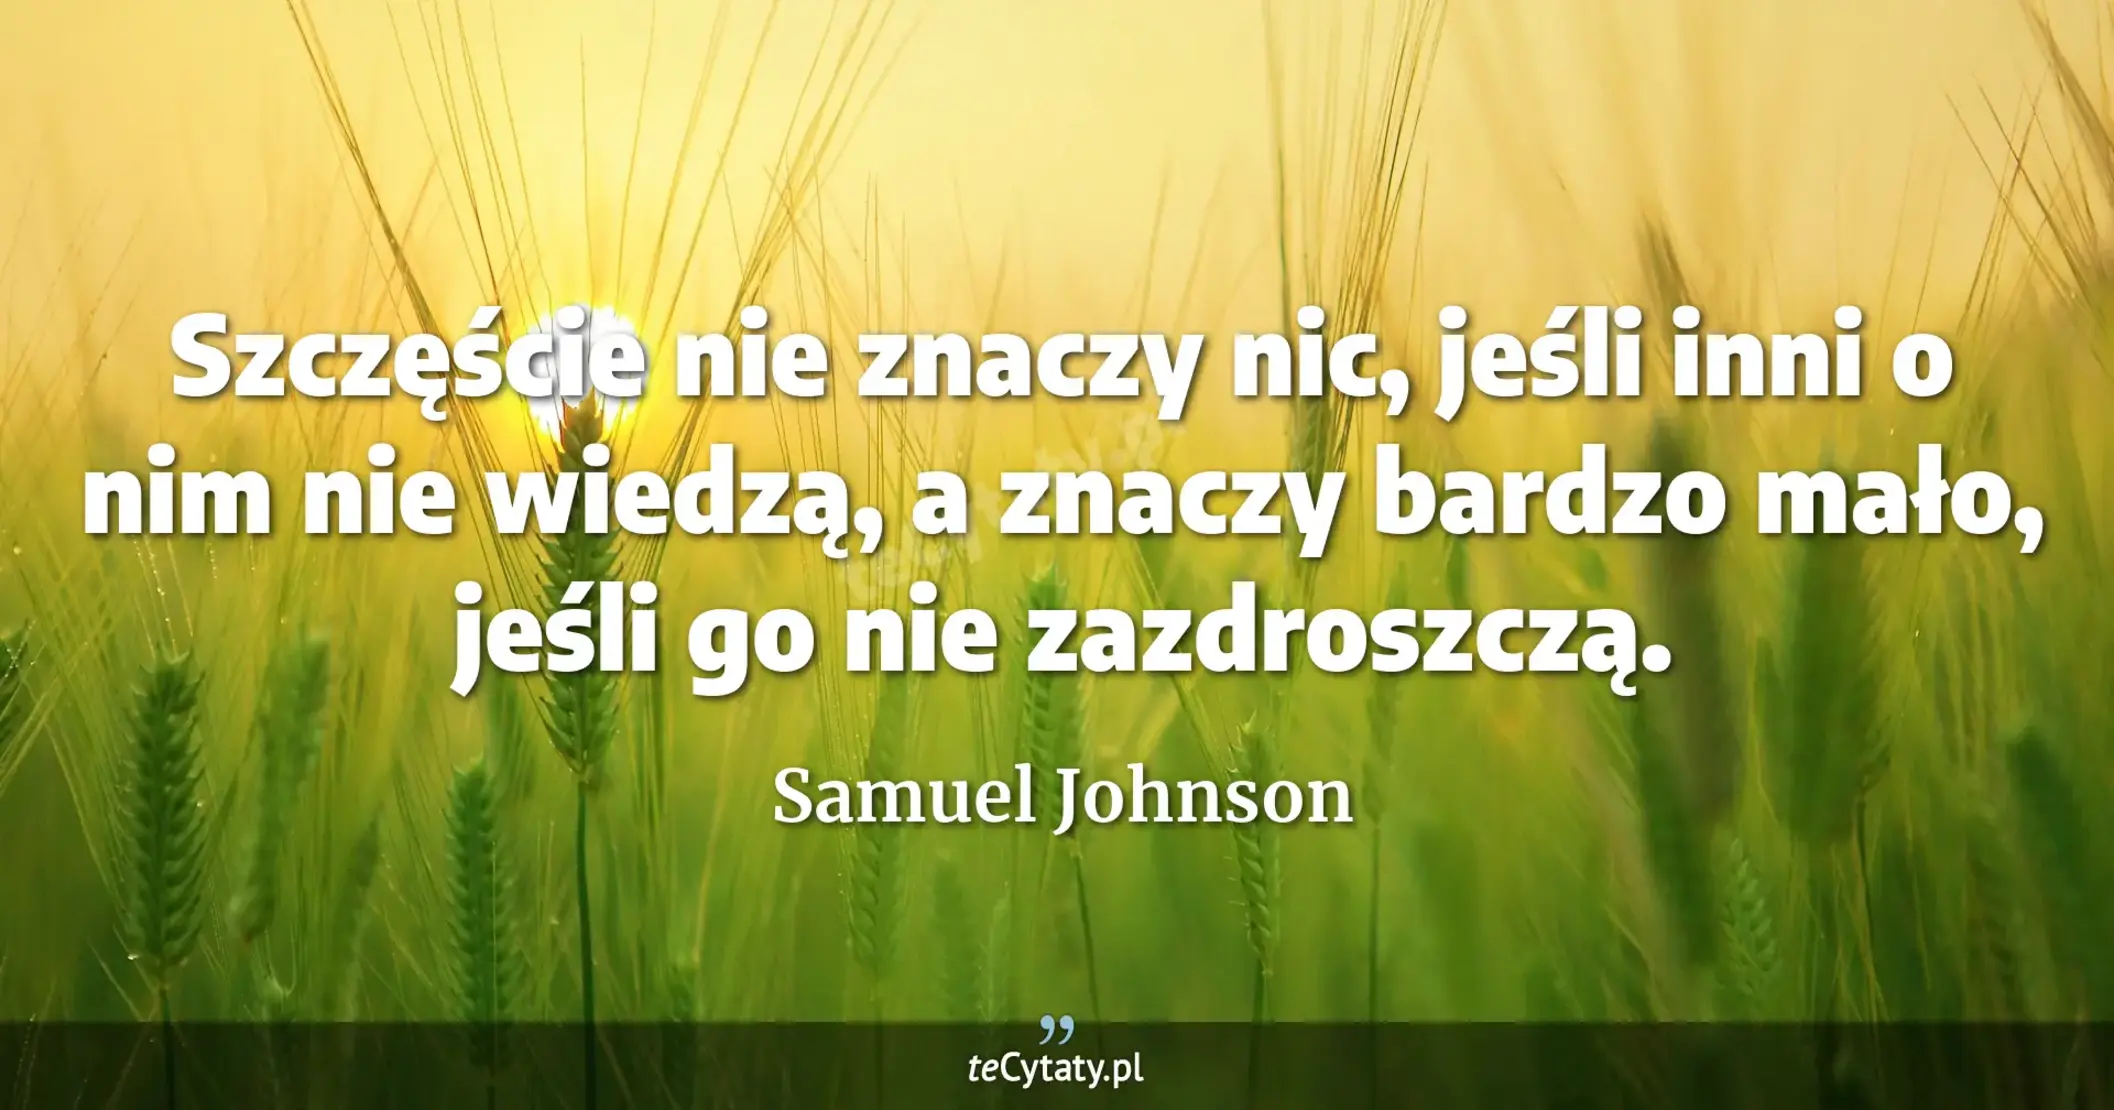 Szczęście nie znaczy nic, jeśli inni o nim nie wiedzą, a znaczy bardzo mało, jeśli go nie zazdroszczą. - Samuel Johnson